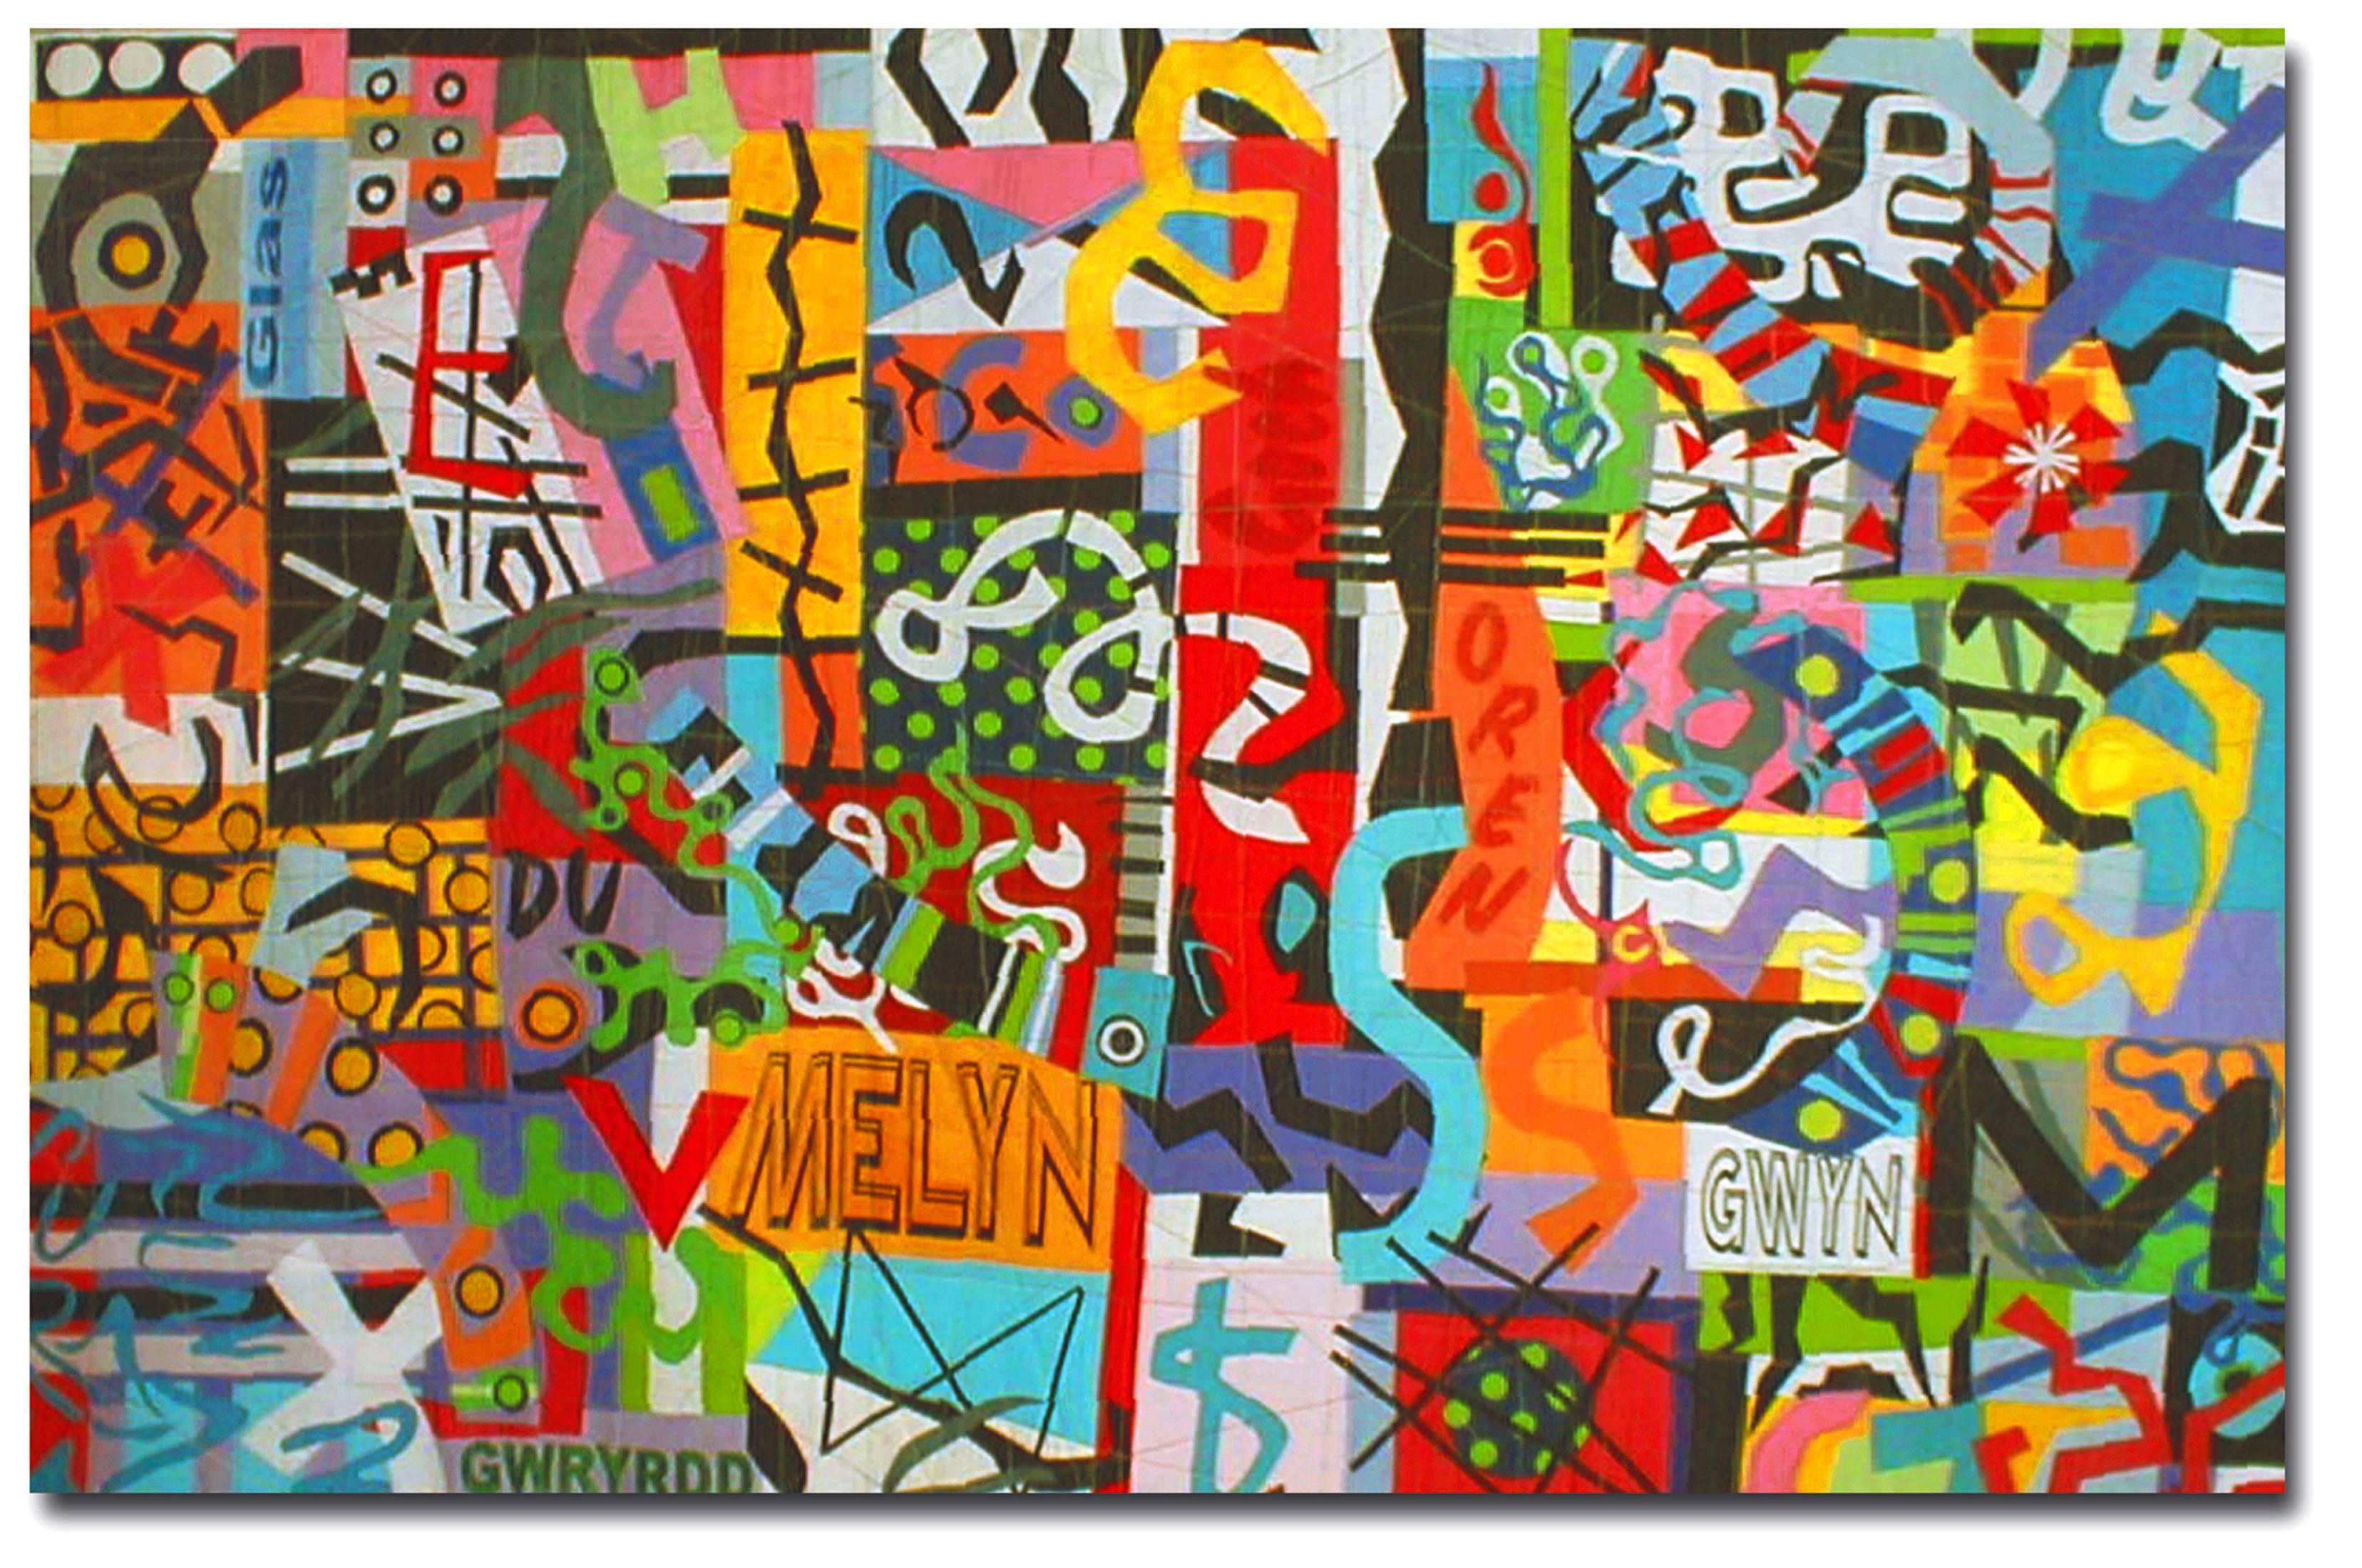 Taffiti Graffiti, quilt contemporain - Mixed Media Art de Bethan Ash